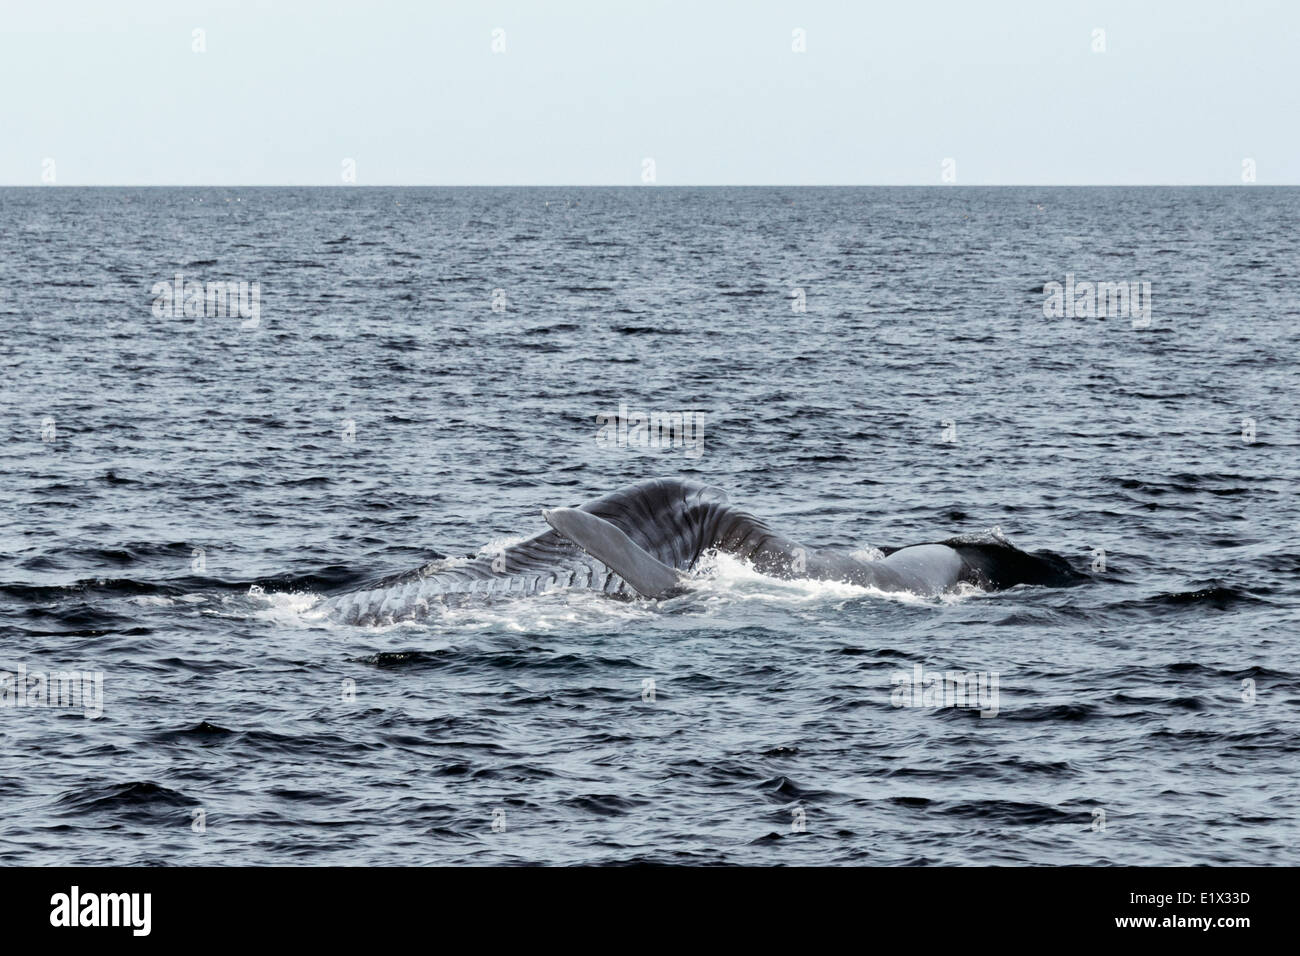 Blue whale filter feeding, Sea of Cortez, Baja, Mexico Stock Photo